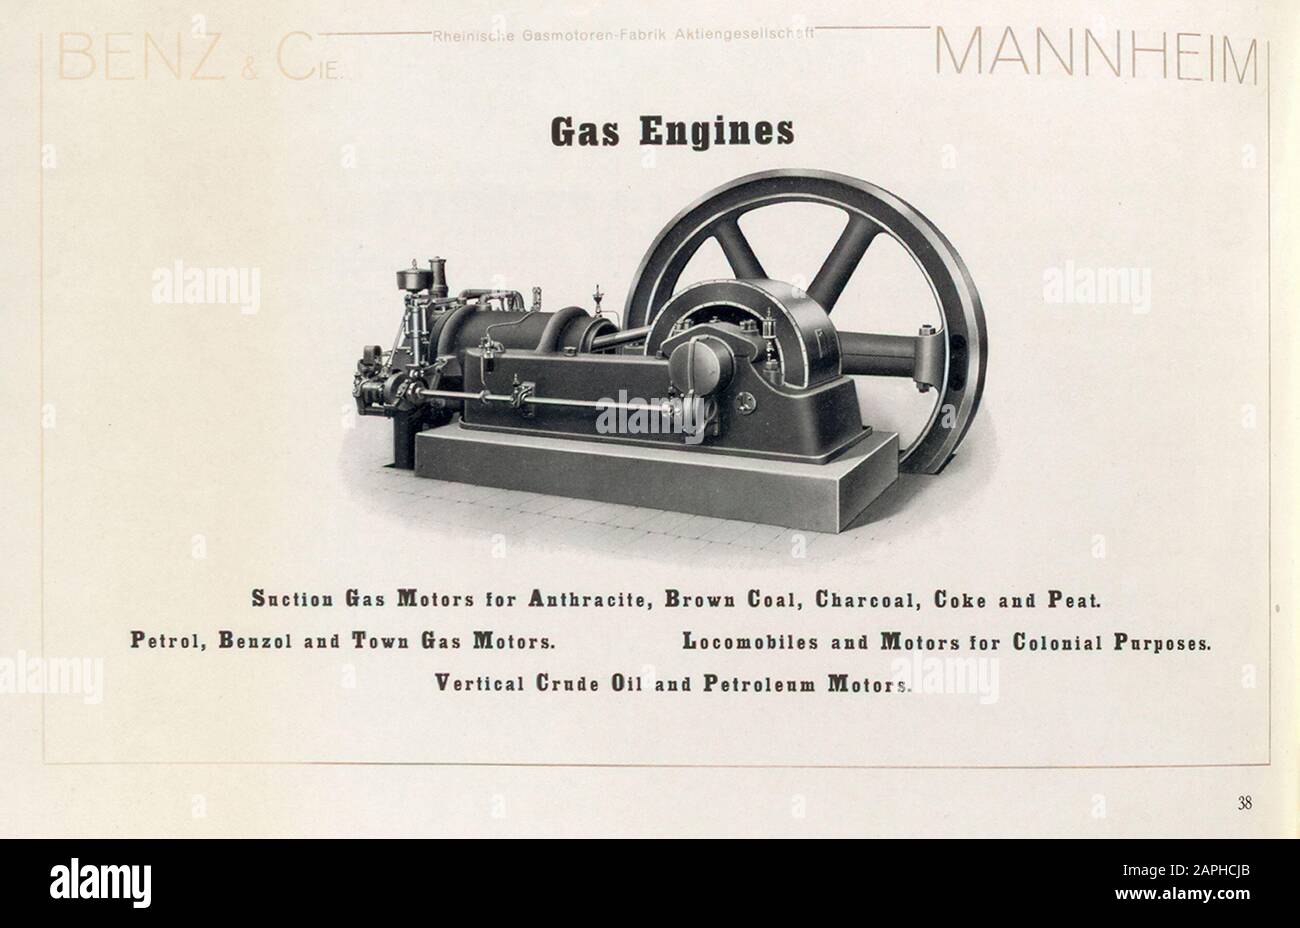 Motores de Gas Benz, Motores y Motores estáticos, Mannheim, Alemania, del catálogo de Benz & Co, 1909 Foto de stock